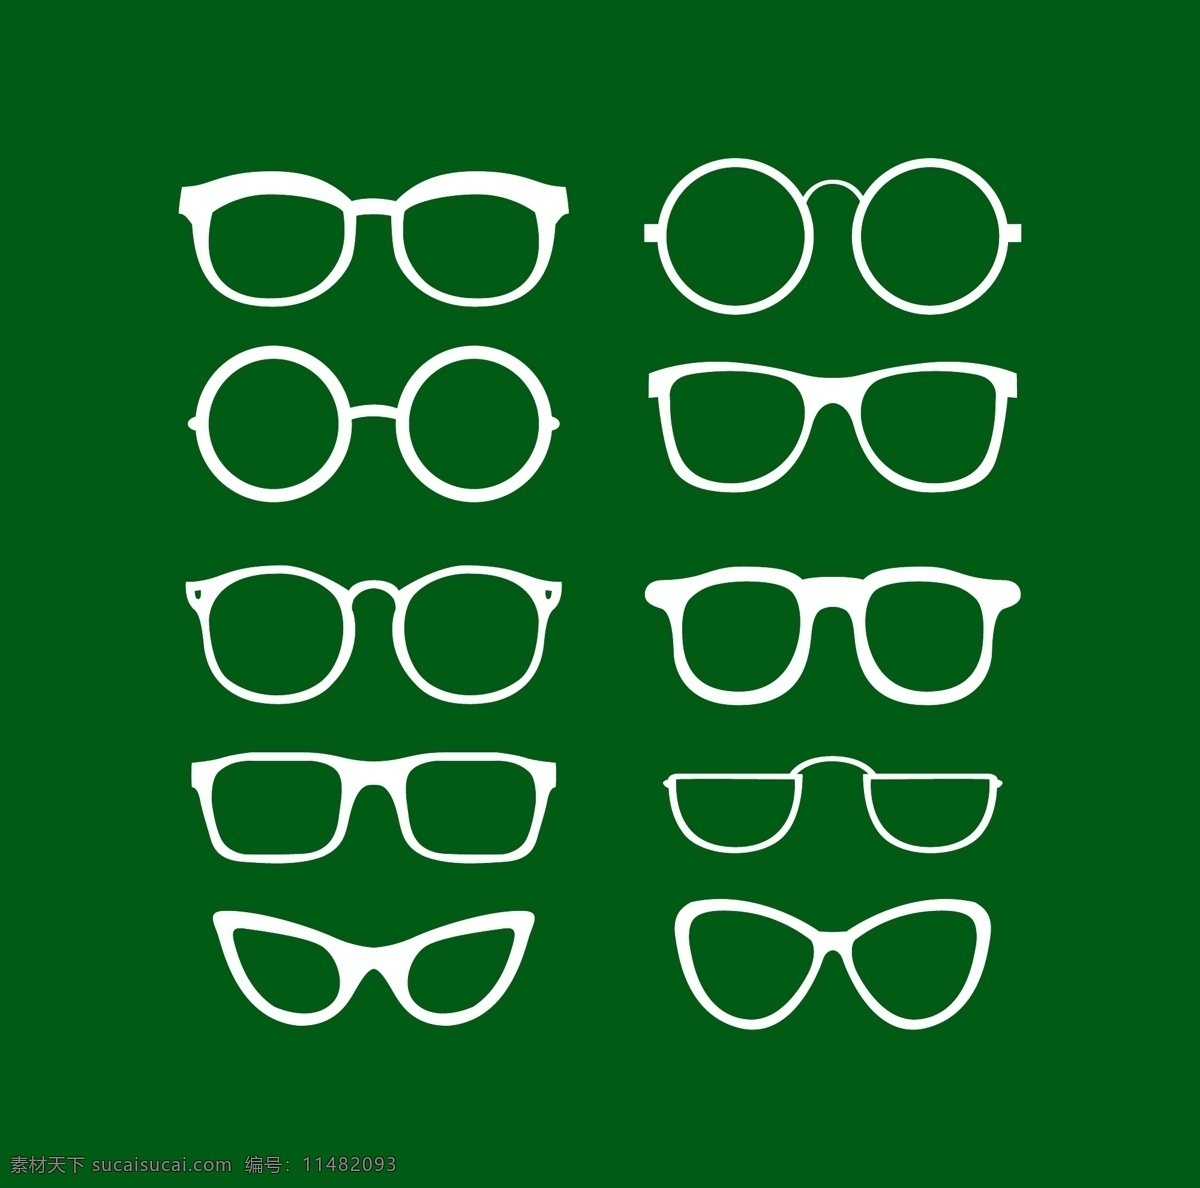 眼镜矢量素材 卡通眼镜 眼镜框 卡通眼镜框 太阳眼镜 墨镜 眼镜效果图 眼镜设计 生活百科 生活用品 矢量素材